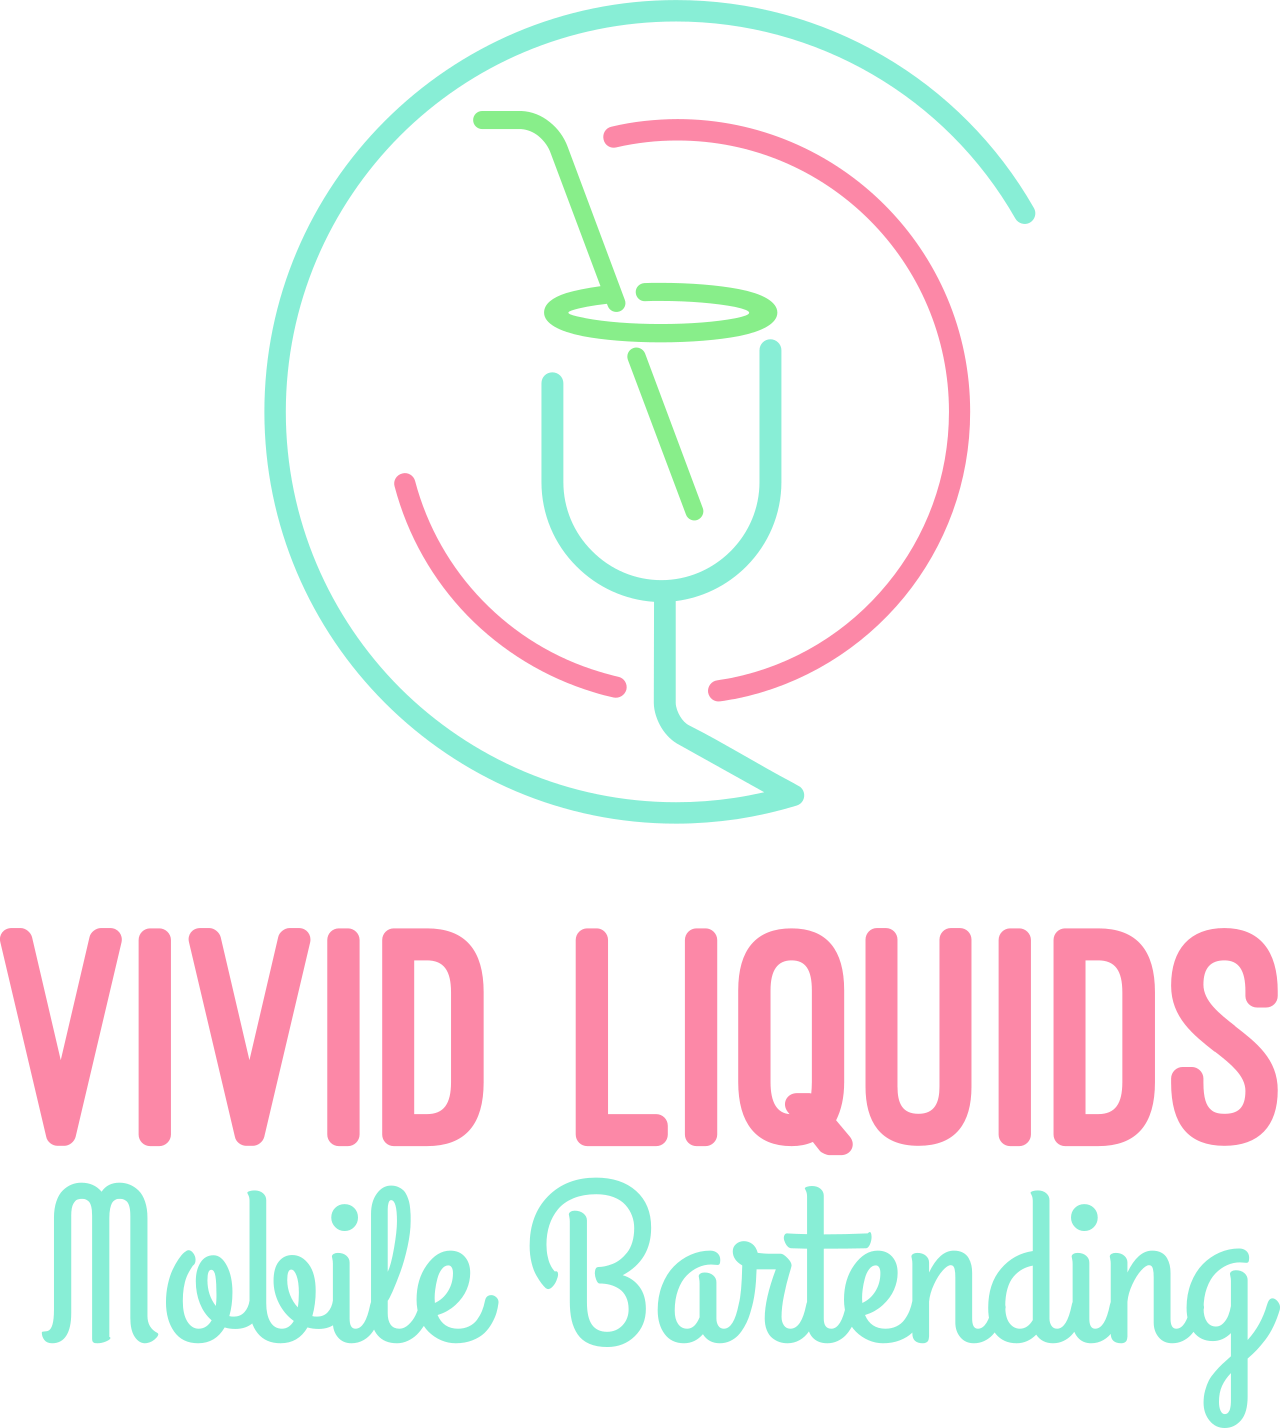 Vivid Liquids's logo